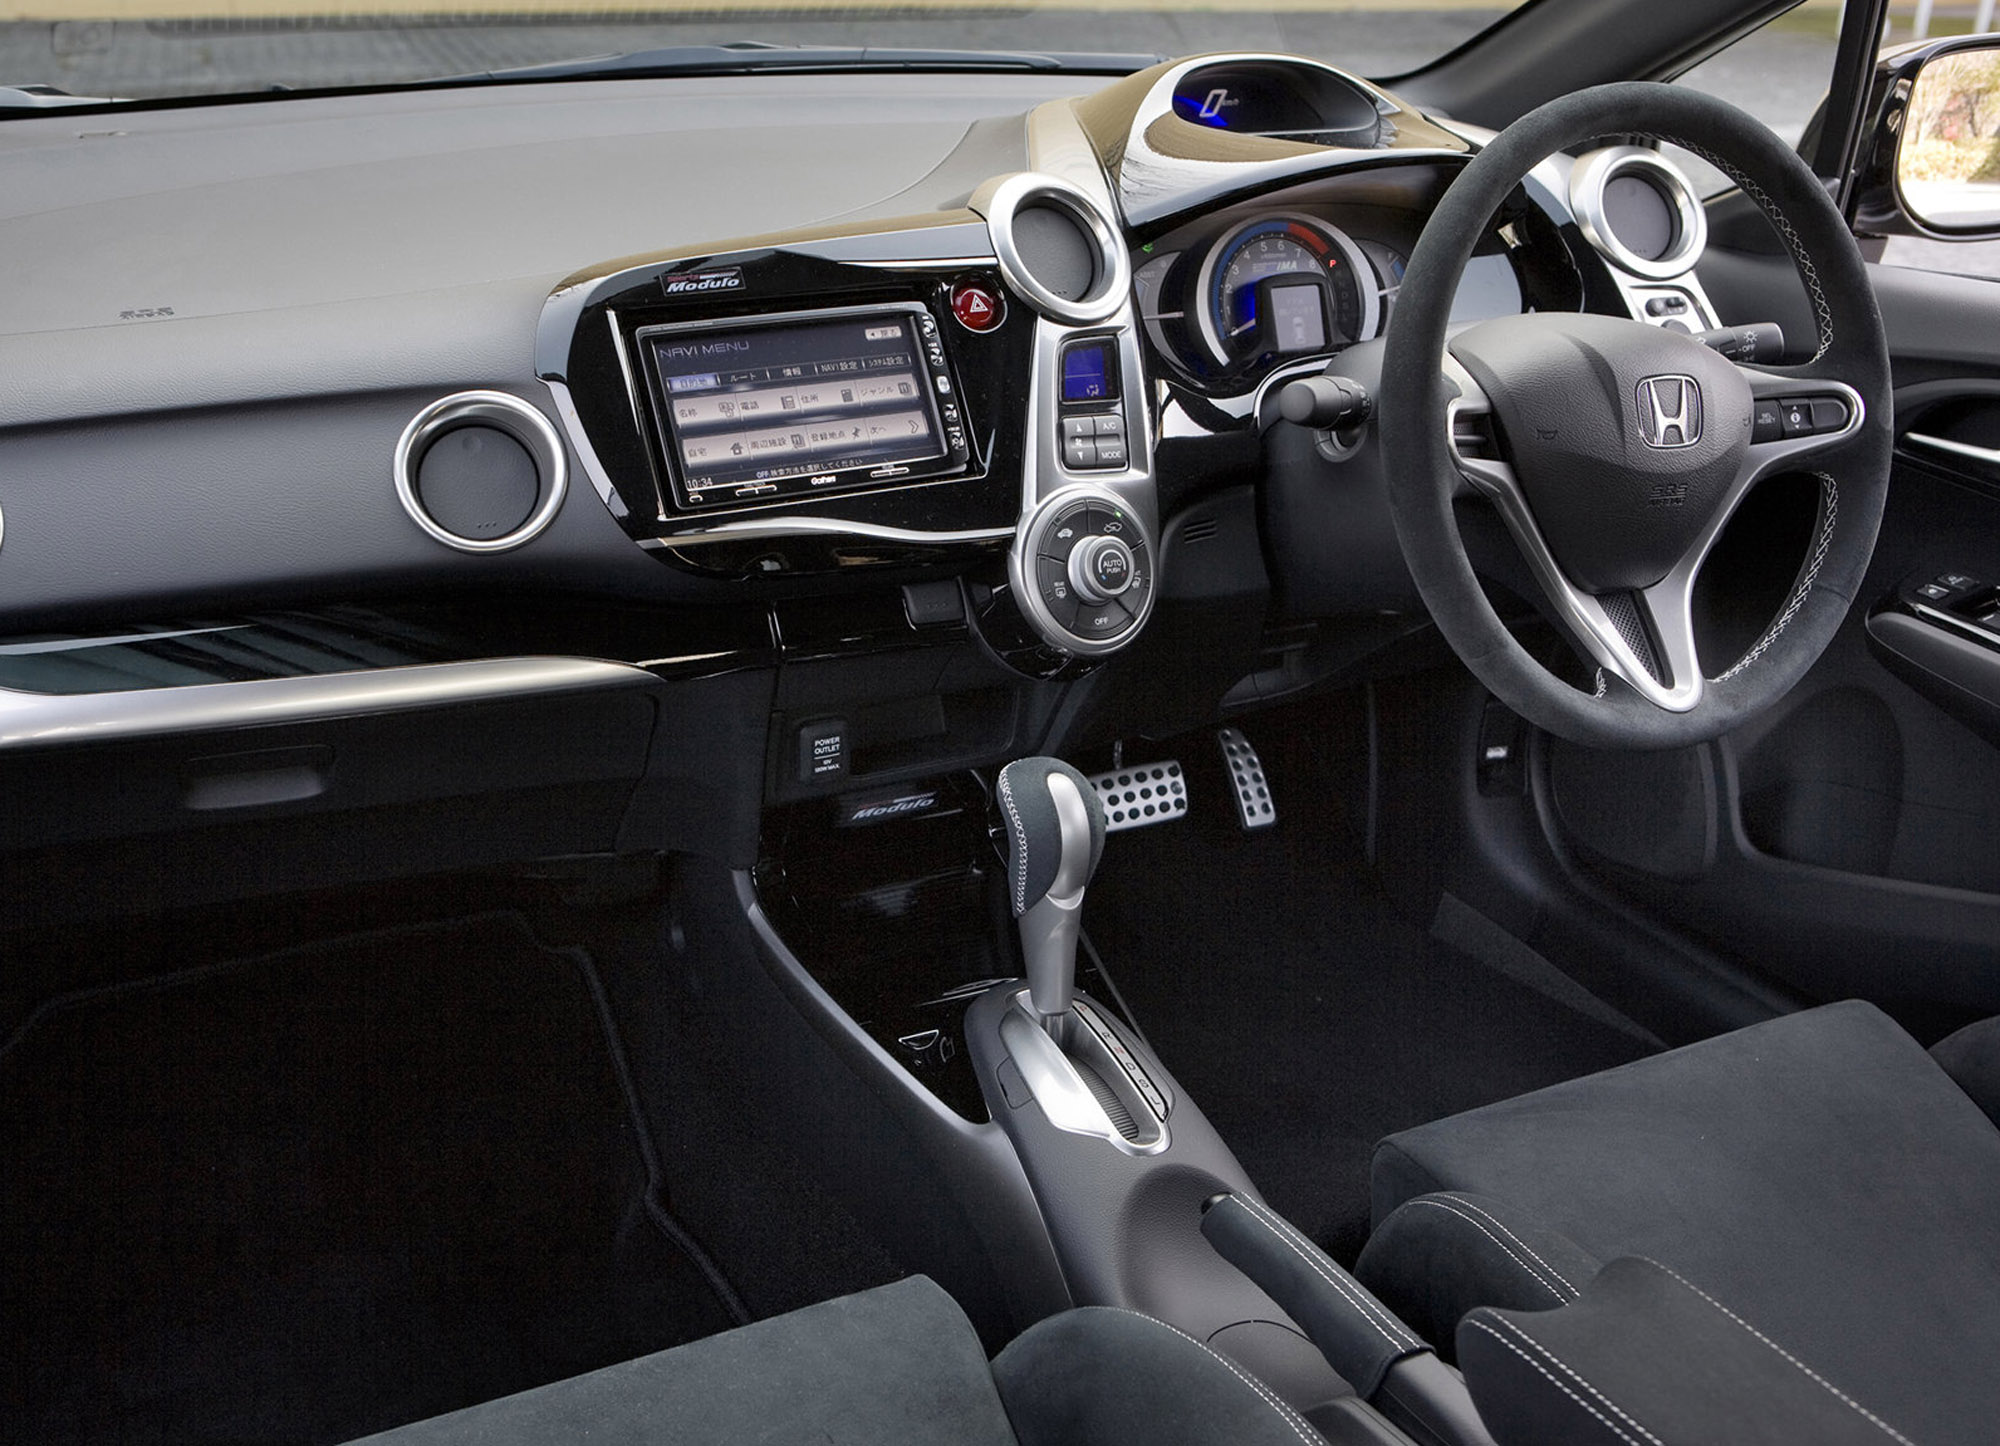 Chi tiết nội thất xe Honda Insight sang trọng 19